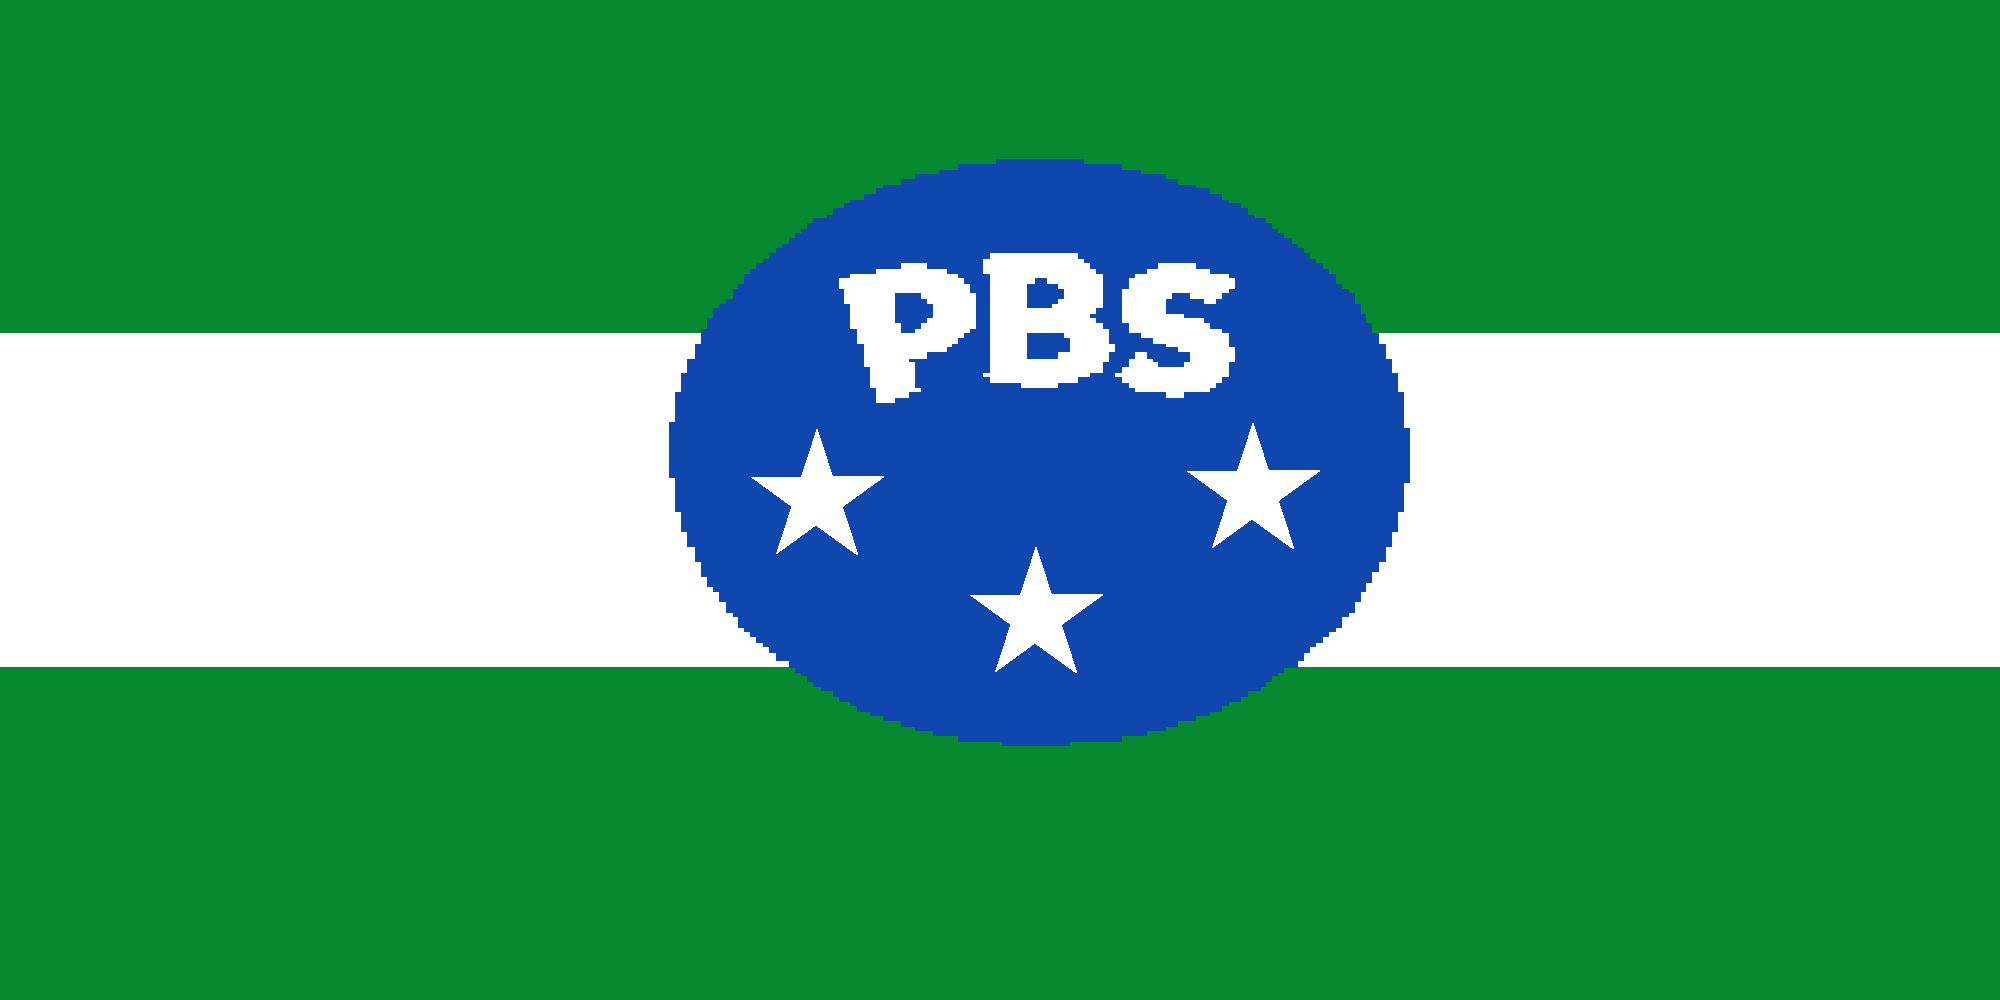 PBS Logo Wallpaper